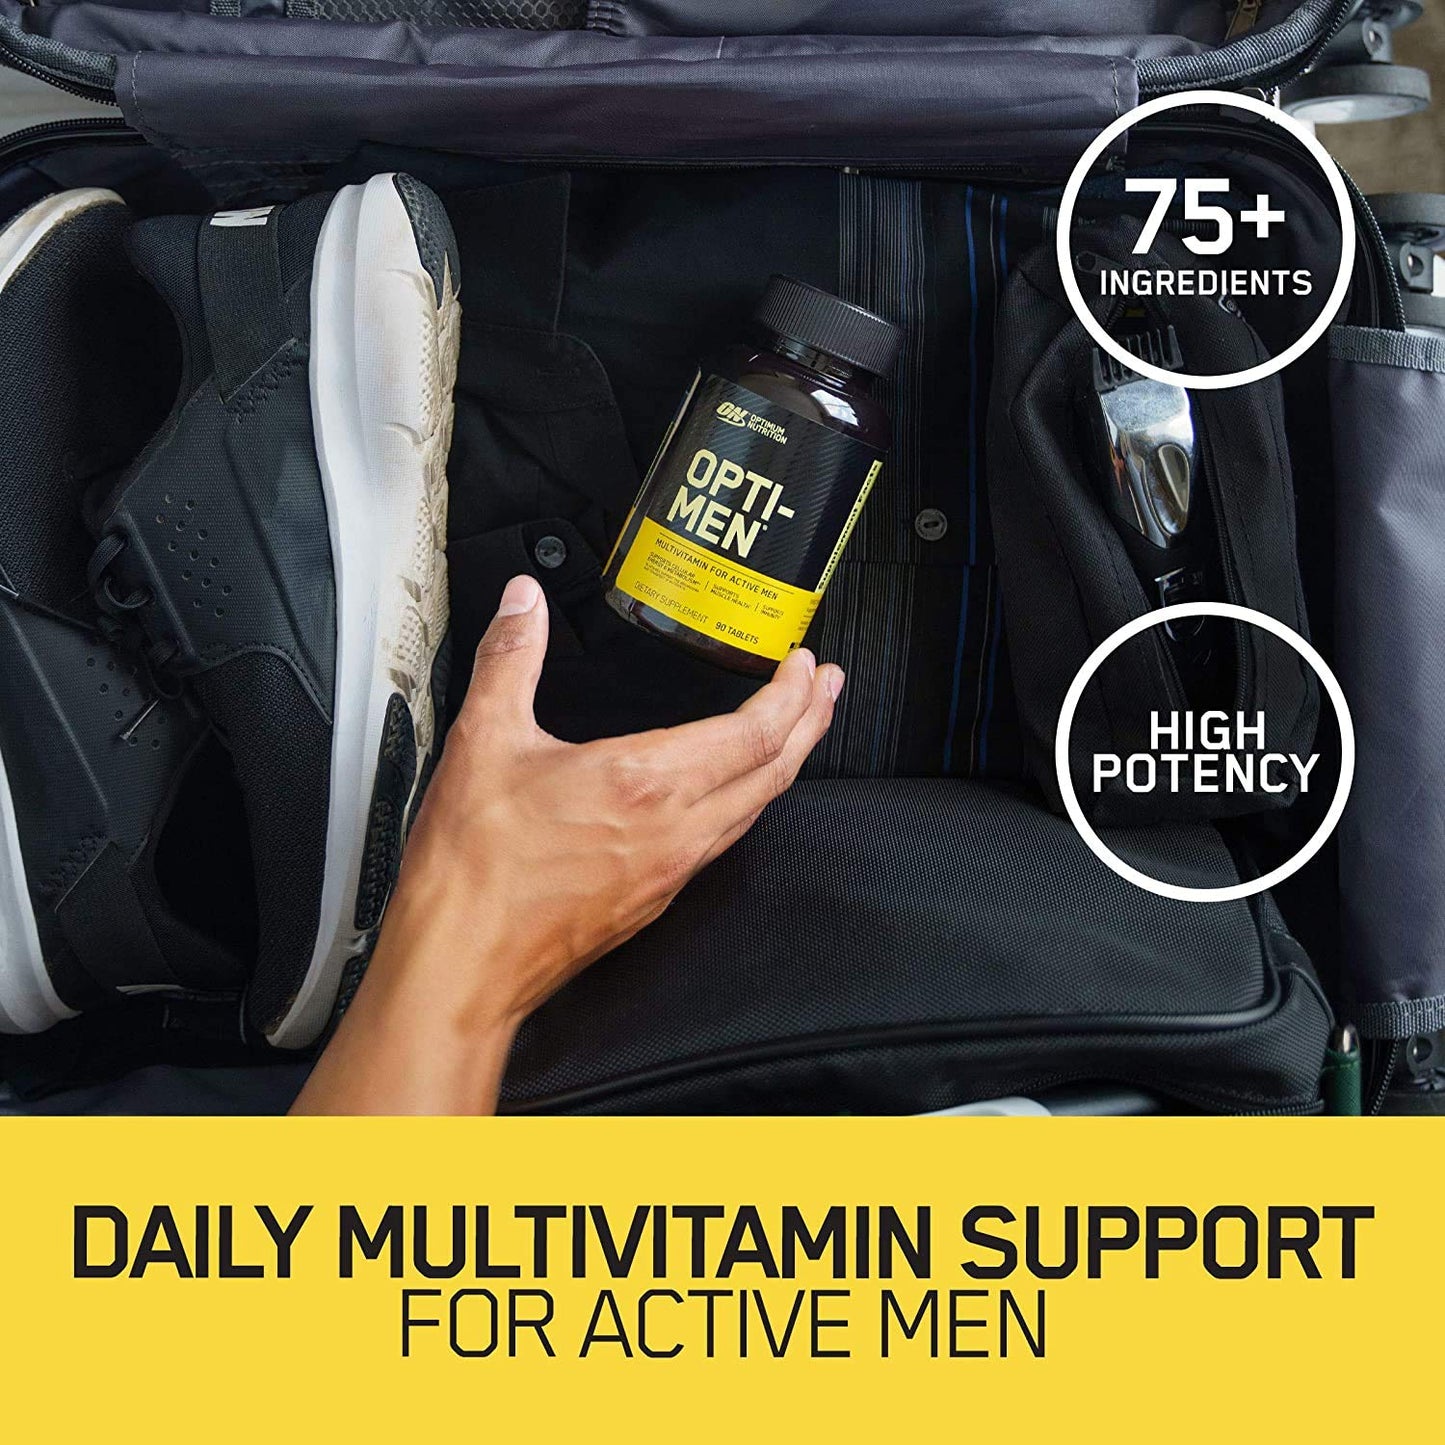 Optimum Nutrition (ON) Opti-men Multivitamin 150 count